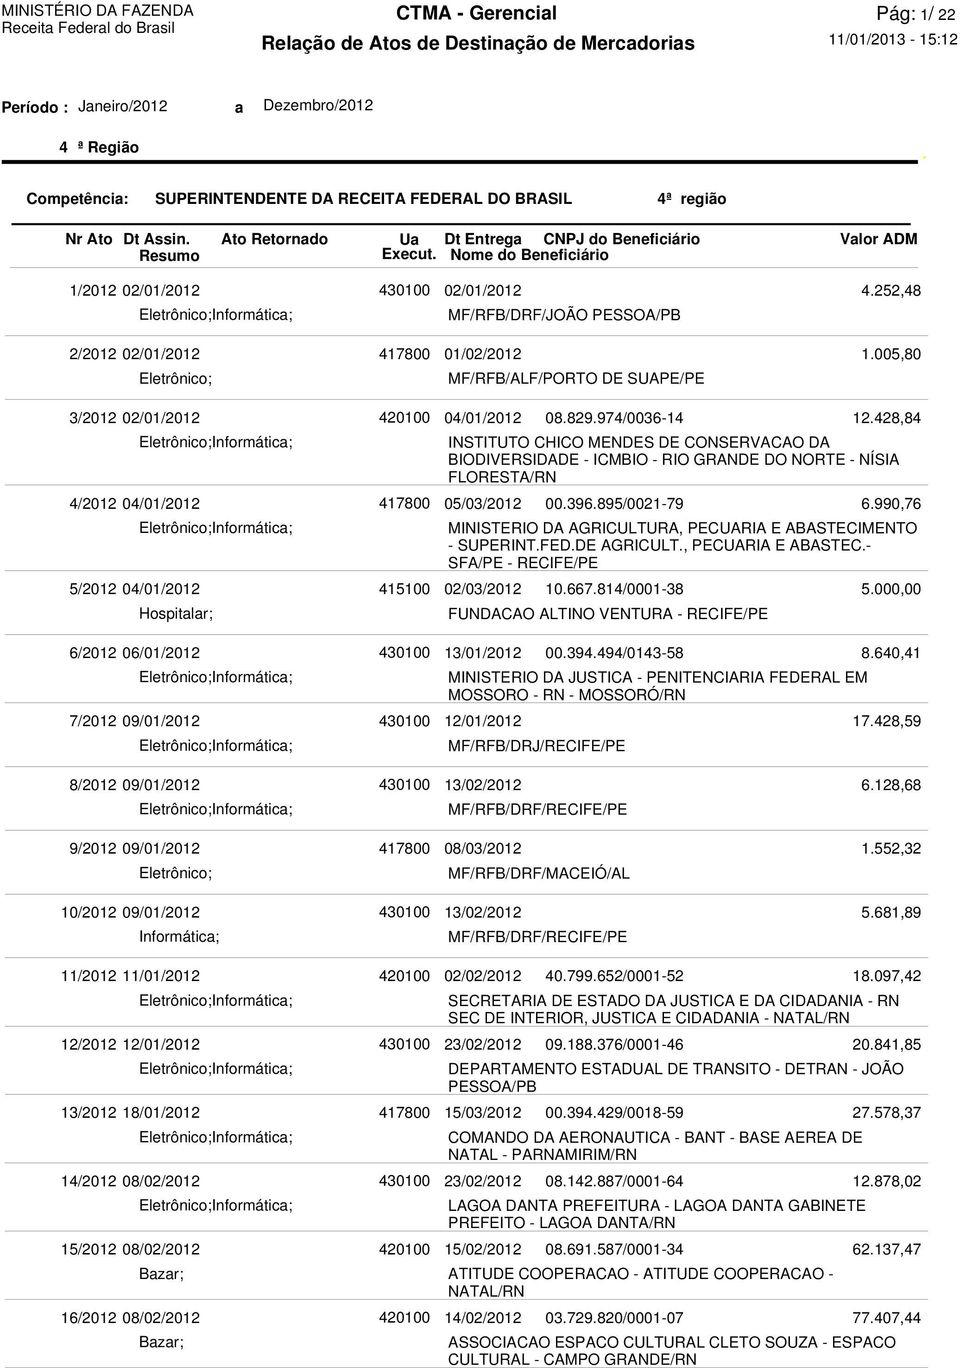 DO NORTE - NÍSIA FLORESTA/RN 05/03/2012 MINISTERIO DA AGRICULTURA, PECUARIA E ABASTECI